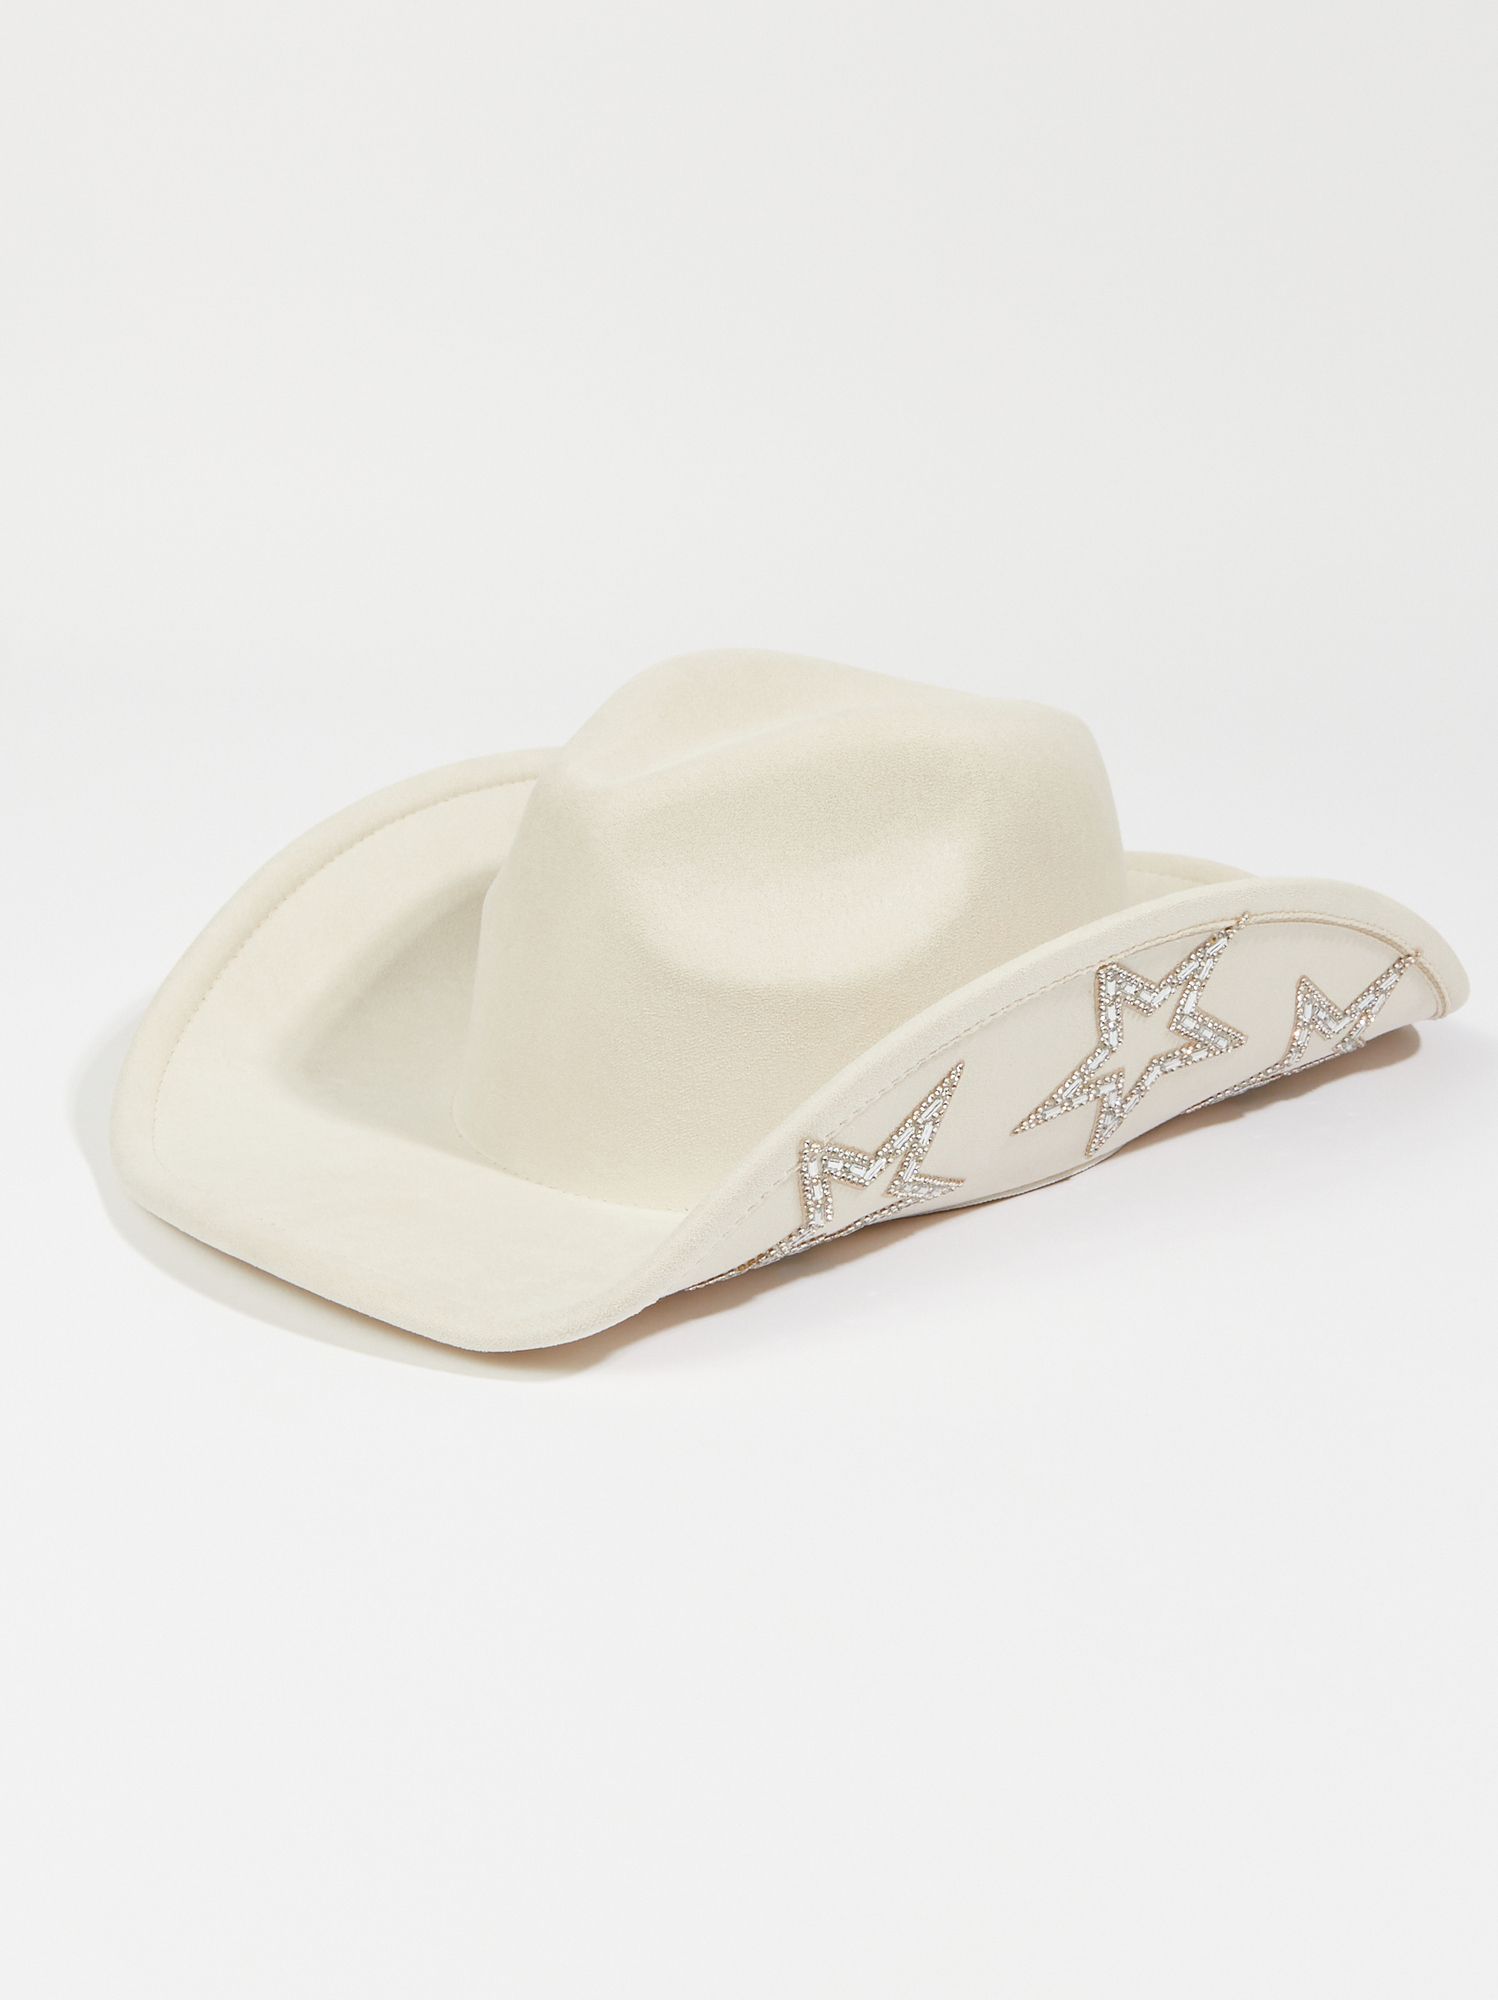 Rhinestone Star Cowgirl Hat | Arula